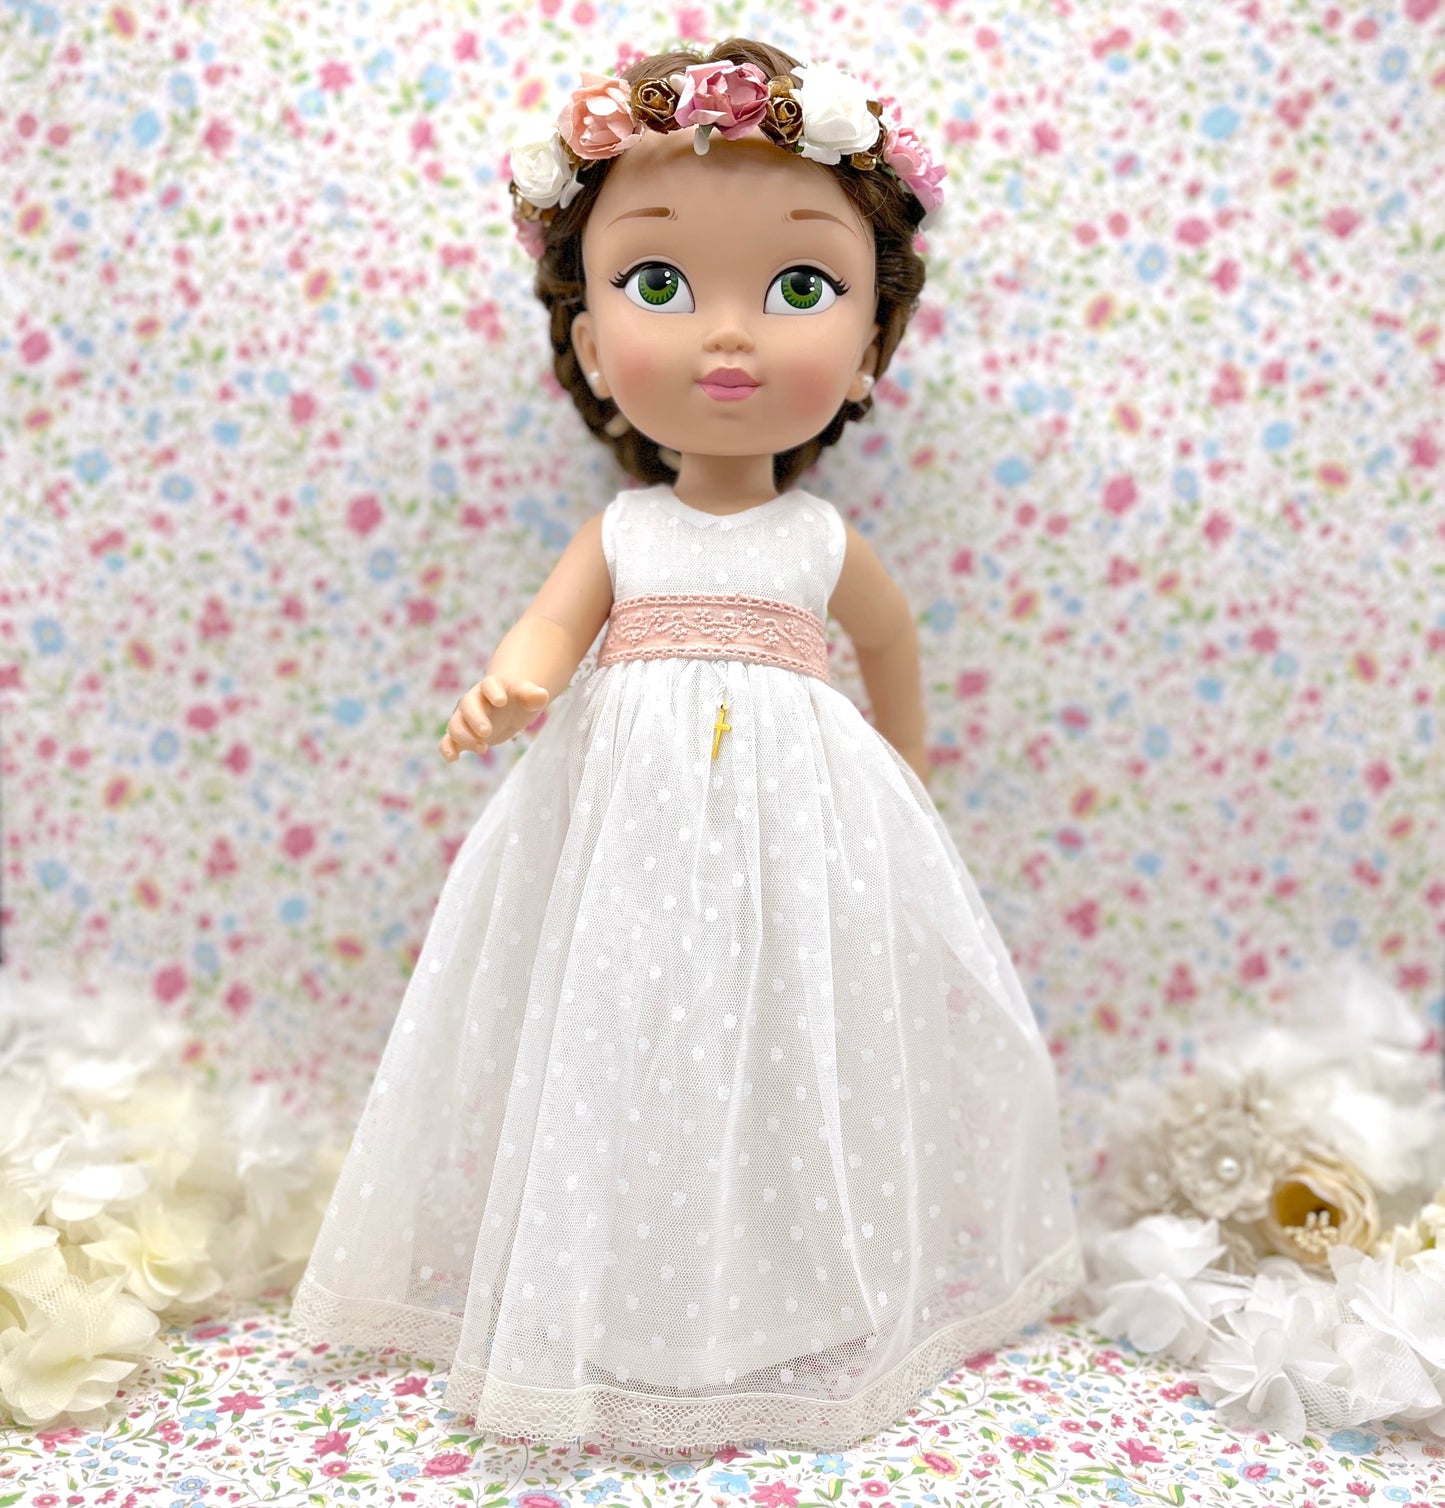 Muñeca de comunión personalizada con vestido de plumeti de tul sin mangas